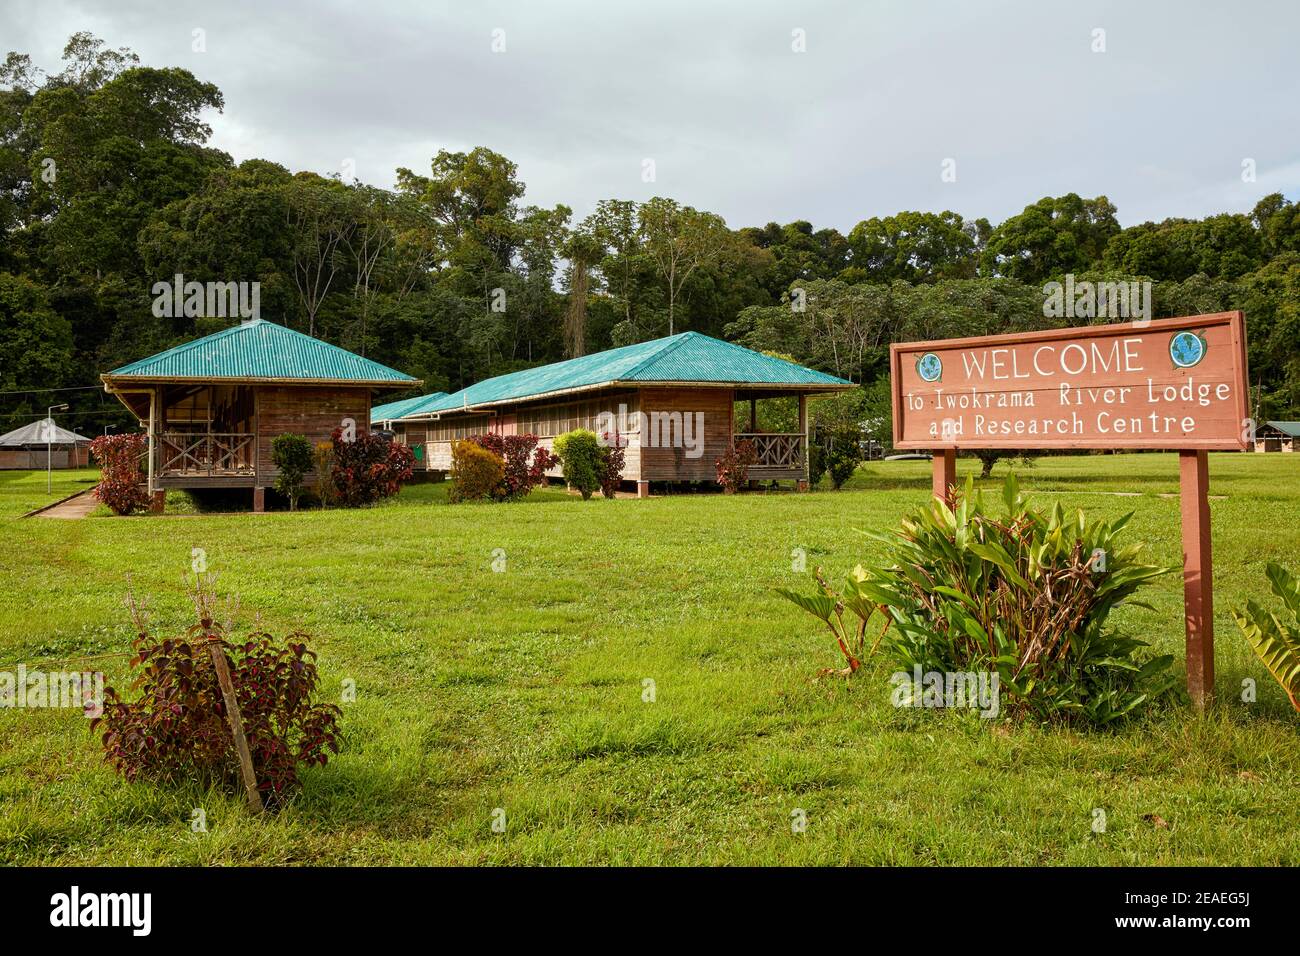 Iwokrama River Lodge and Research Centre anciennement connu sous le nom de station de campagne d'Iwokrama dans la forêt d'Iwokrama, Guyana Banque D'Images